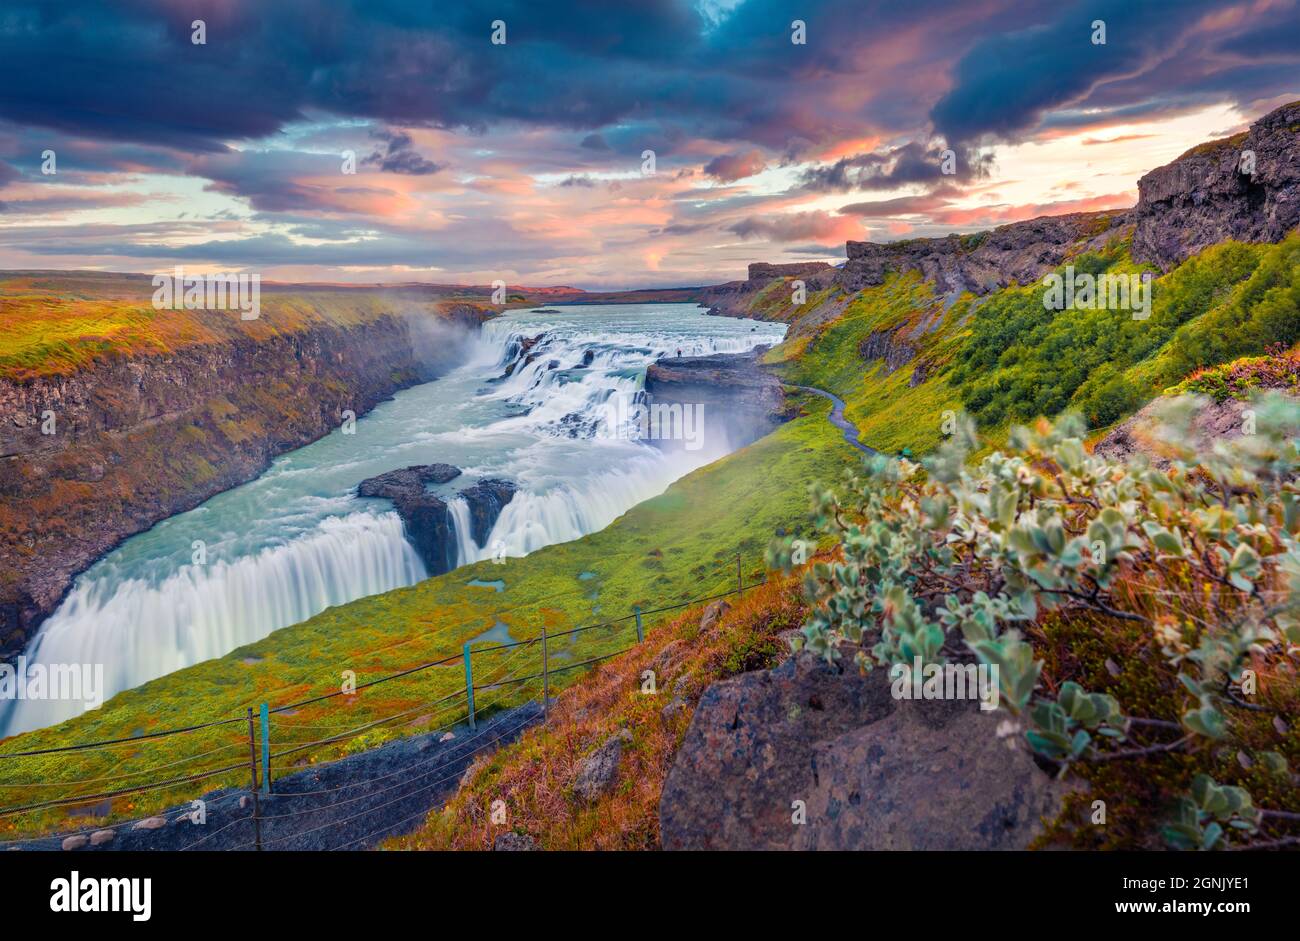 Emozionante vista estiva della famosa destinazione turistica - cascata Gullfoss. Incredibile alba sul fiume Hvita. Spettacolare scena mattutina dell'Islanda, EUR Foto Stock